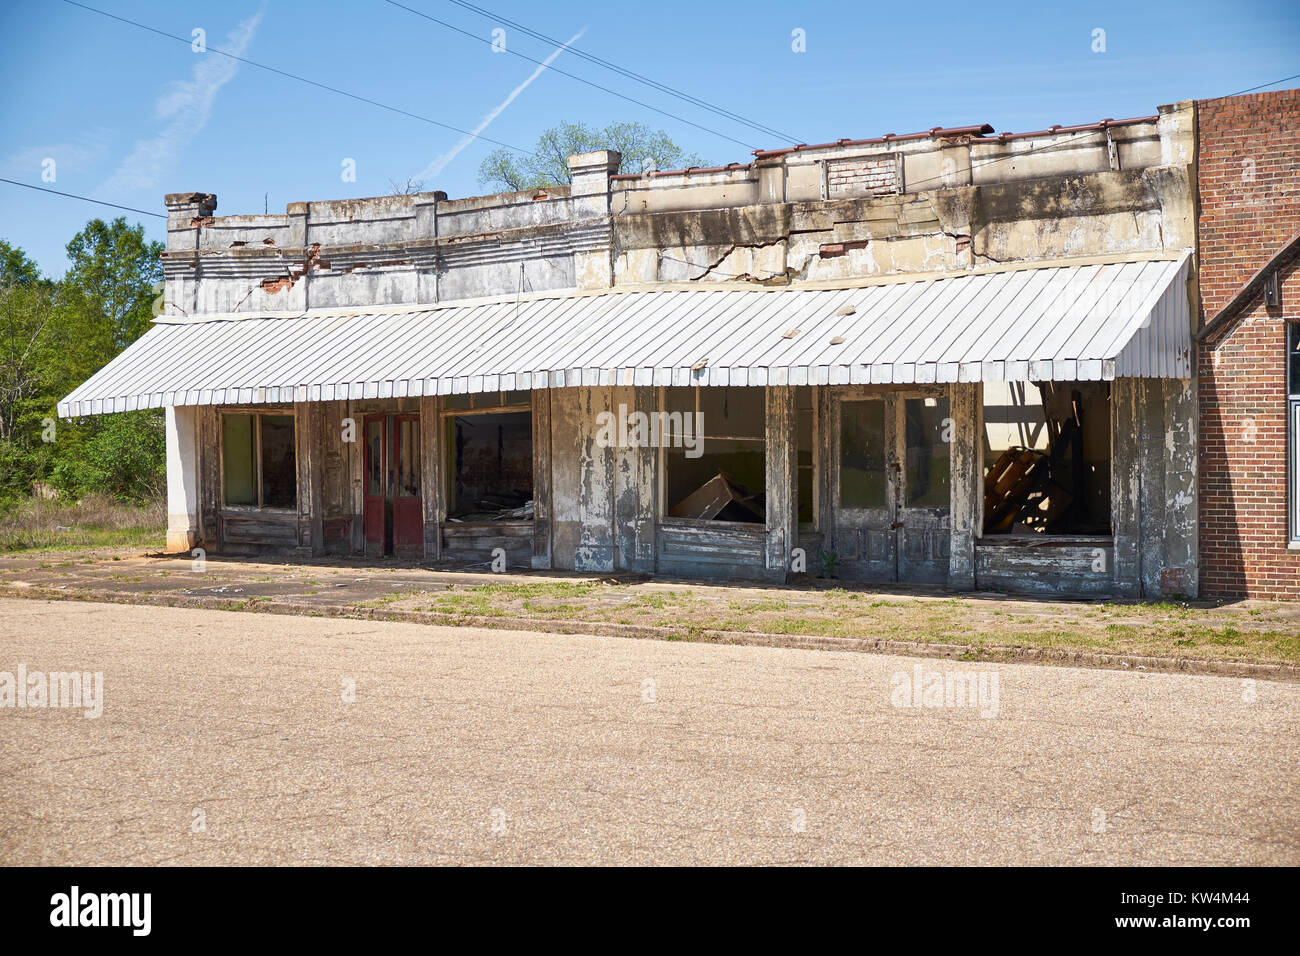 Abbandonato negozio di fronte o storefront, che mostra il livello di povertà in piccole città rurali in Fort Deposito, Alabama, Stati Uniti. Foto Stock